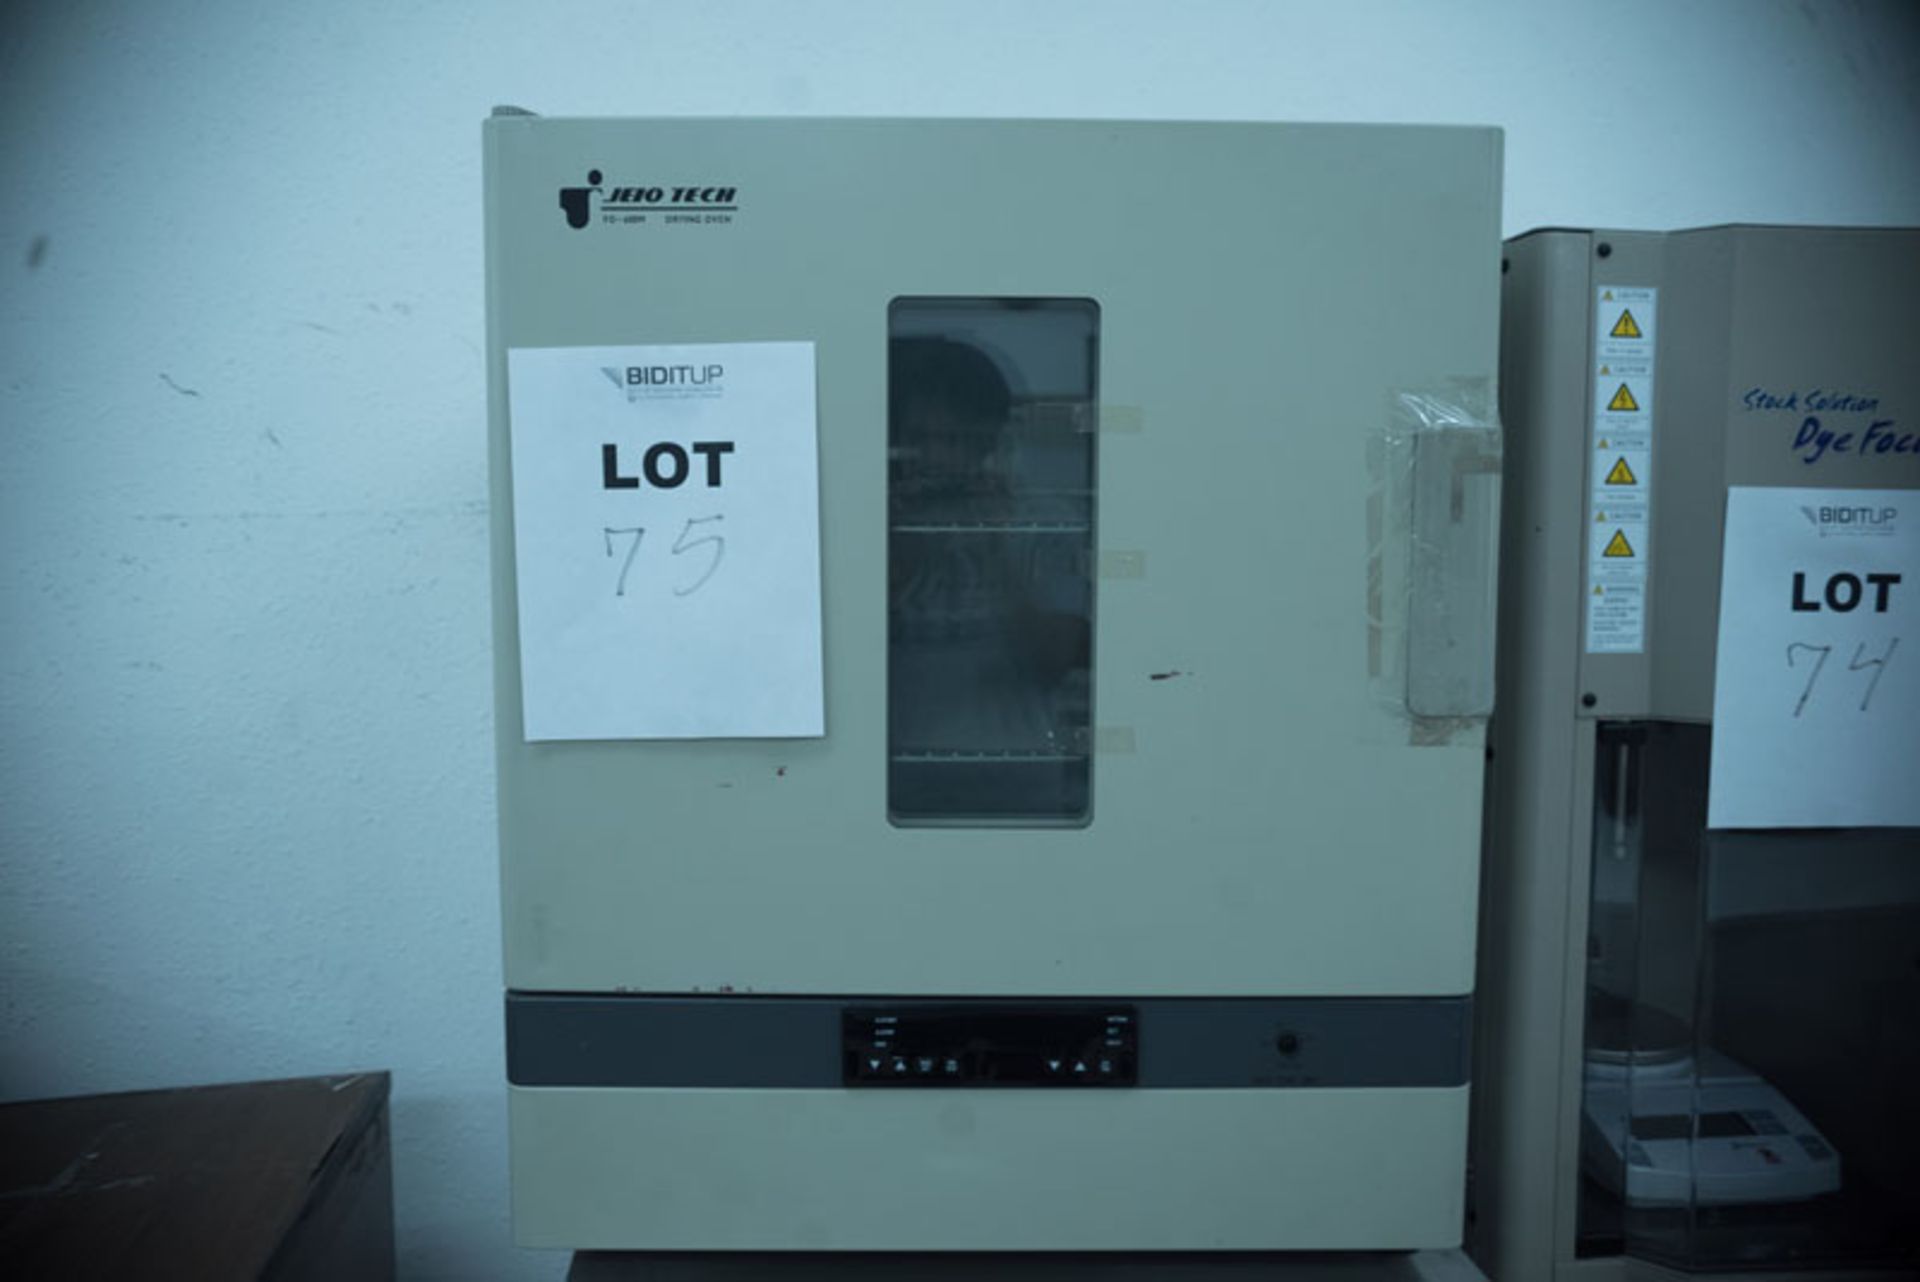 JEIO Tech Lab Oven Model FO-600M SER# FO30590 2 Shelf